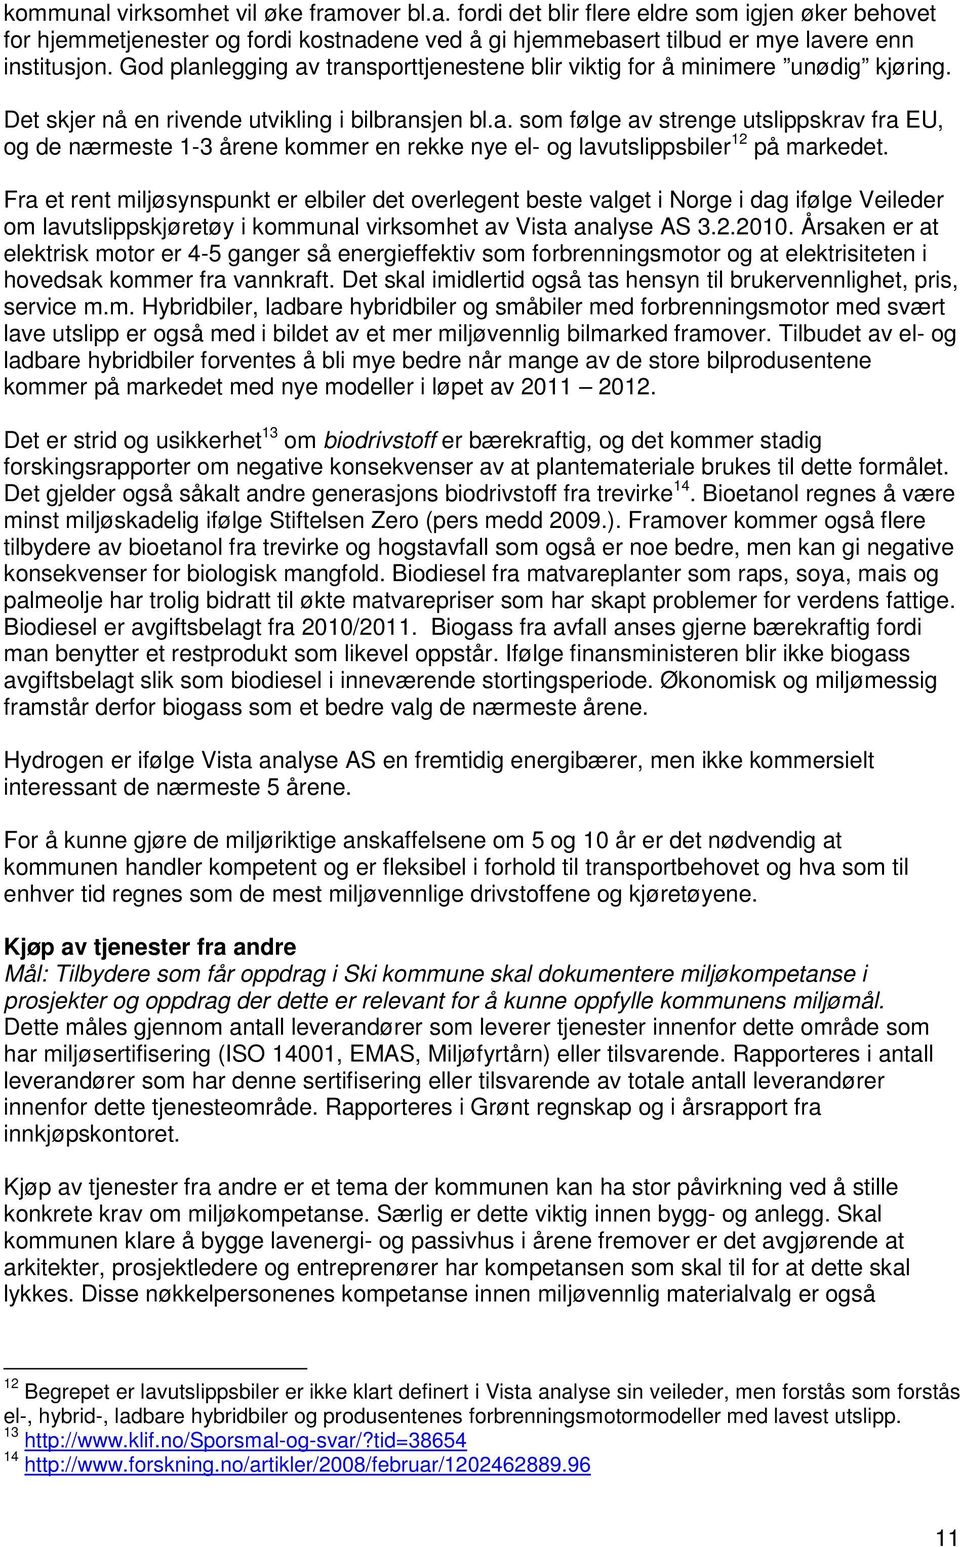 Fra et rent miljøsynspunkt er elbiler det overlegent beste valget i Norge i dag ifølge Veileder om lavutslippskjøretøy i kommunal virksomhet av Vista analyse AS 3.2.2010.